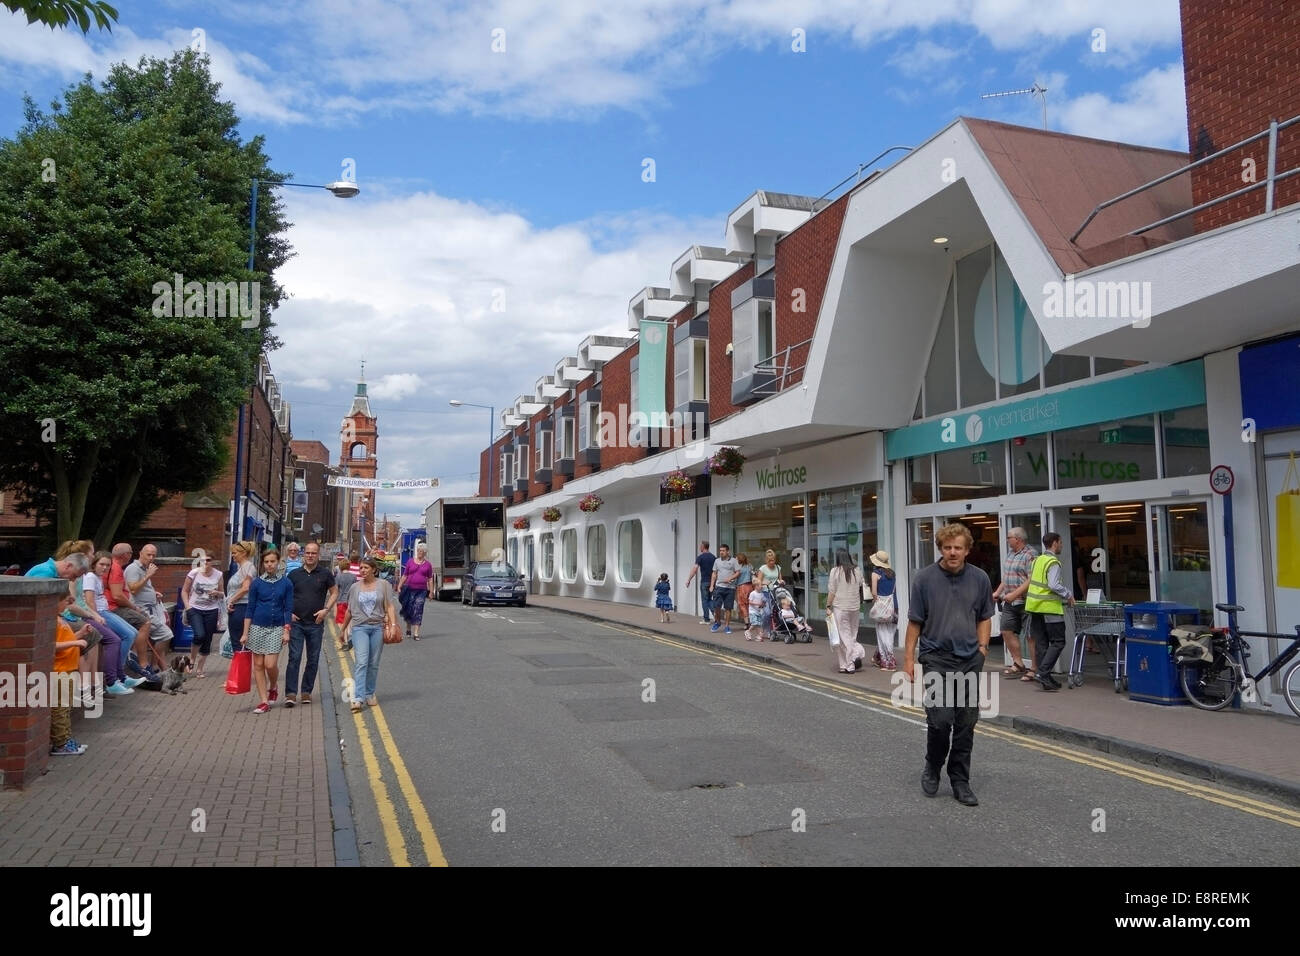 Ryemarket Shopping Centre, Market Street, Stourbridge, West Midlands, England, UK Stock Photo